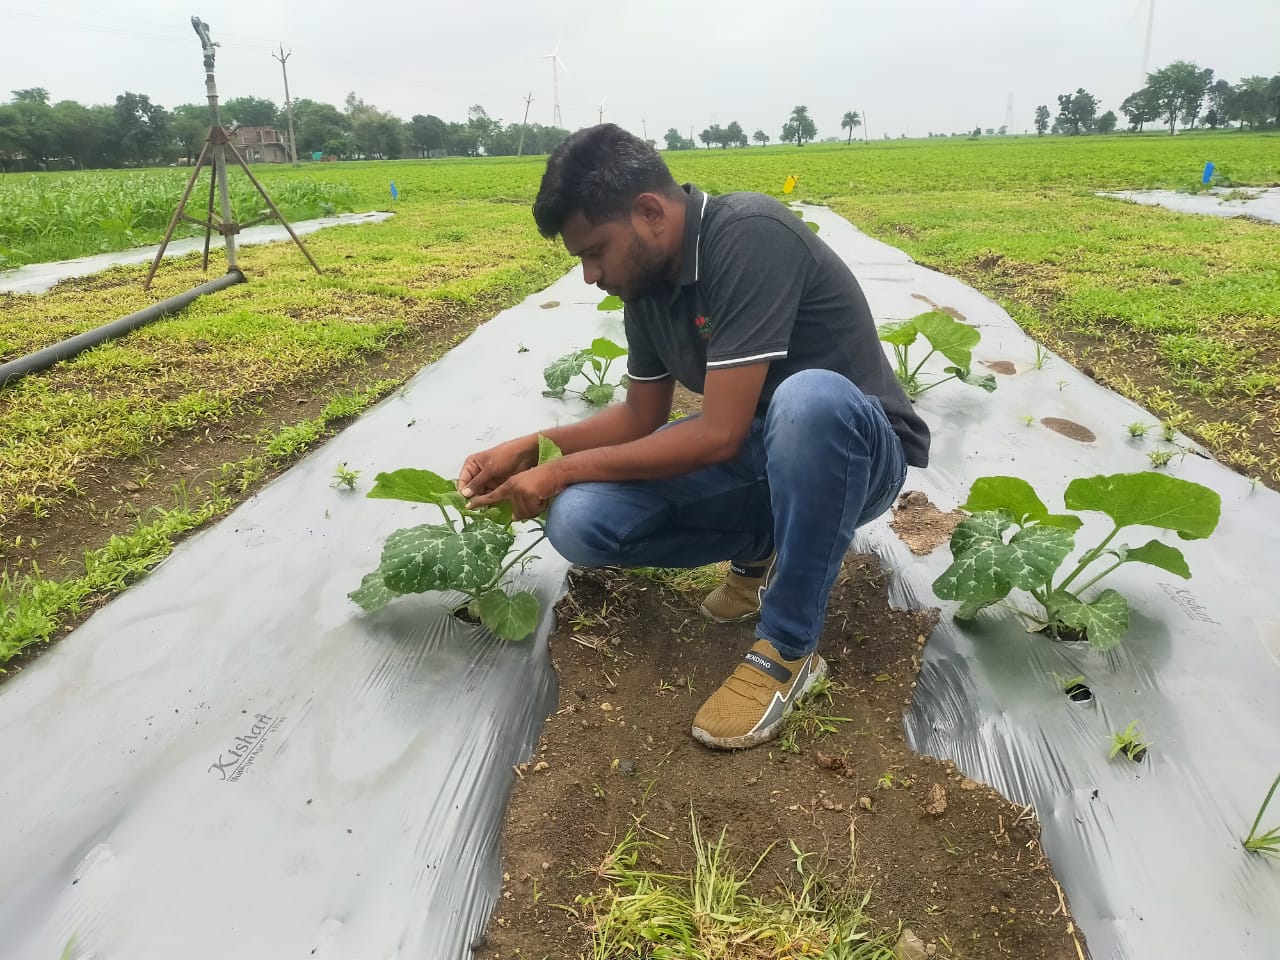 EWS-KT staff member inspects low-growing plants in a farmer's field